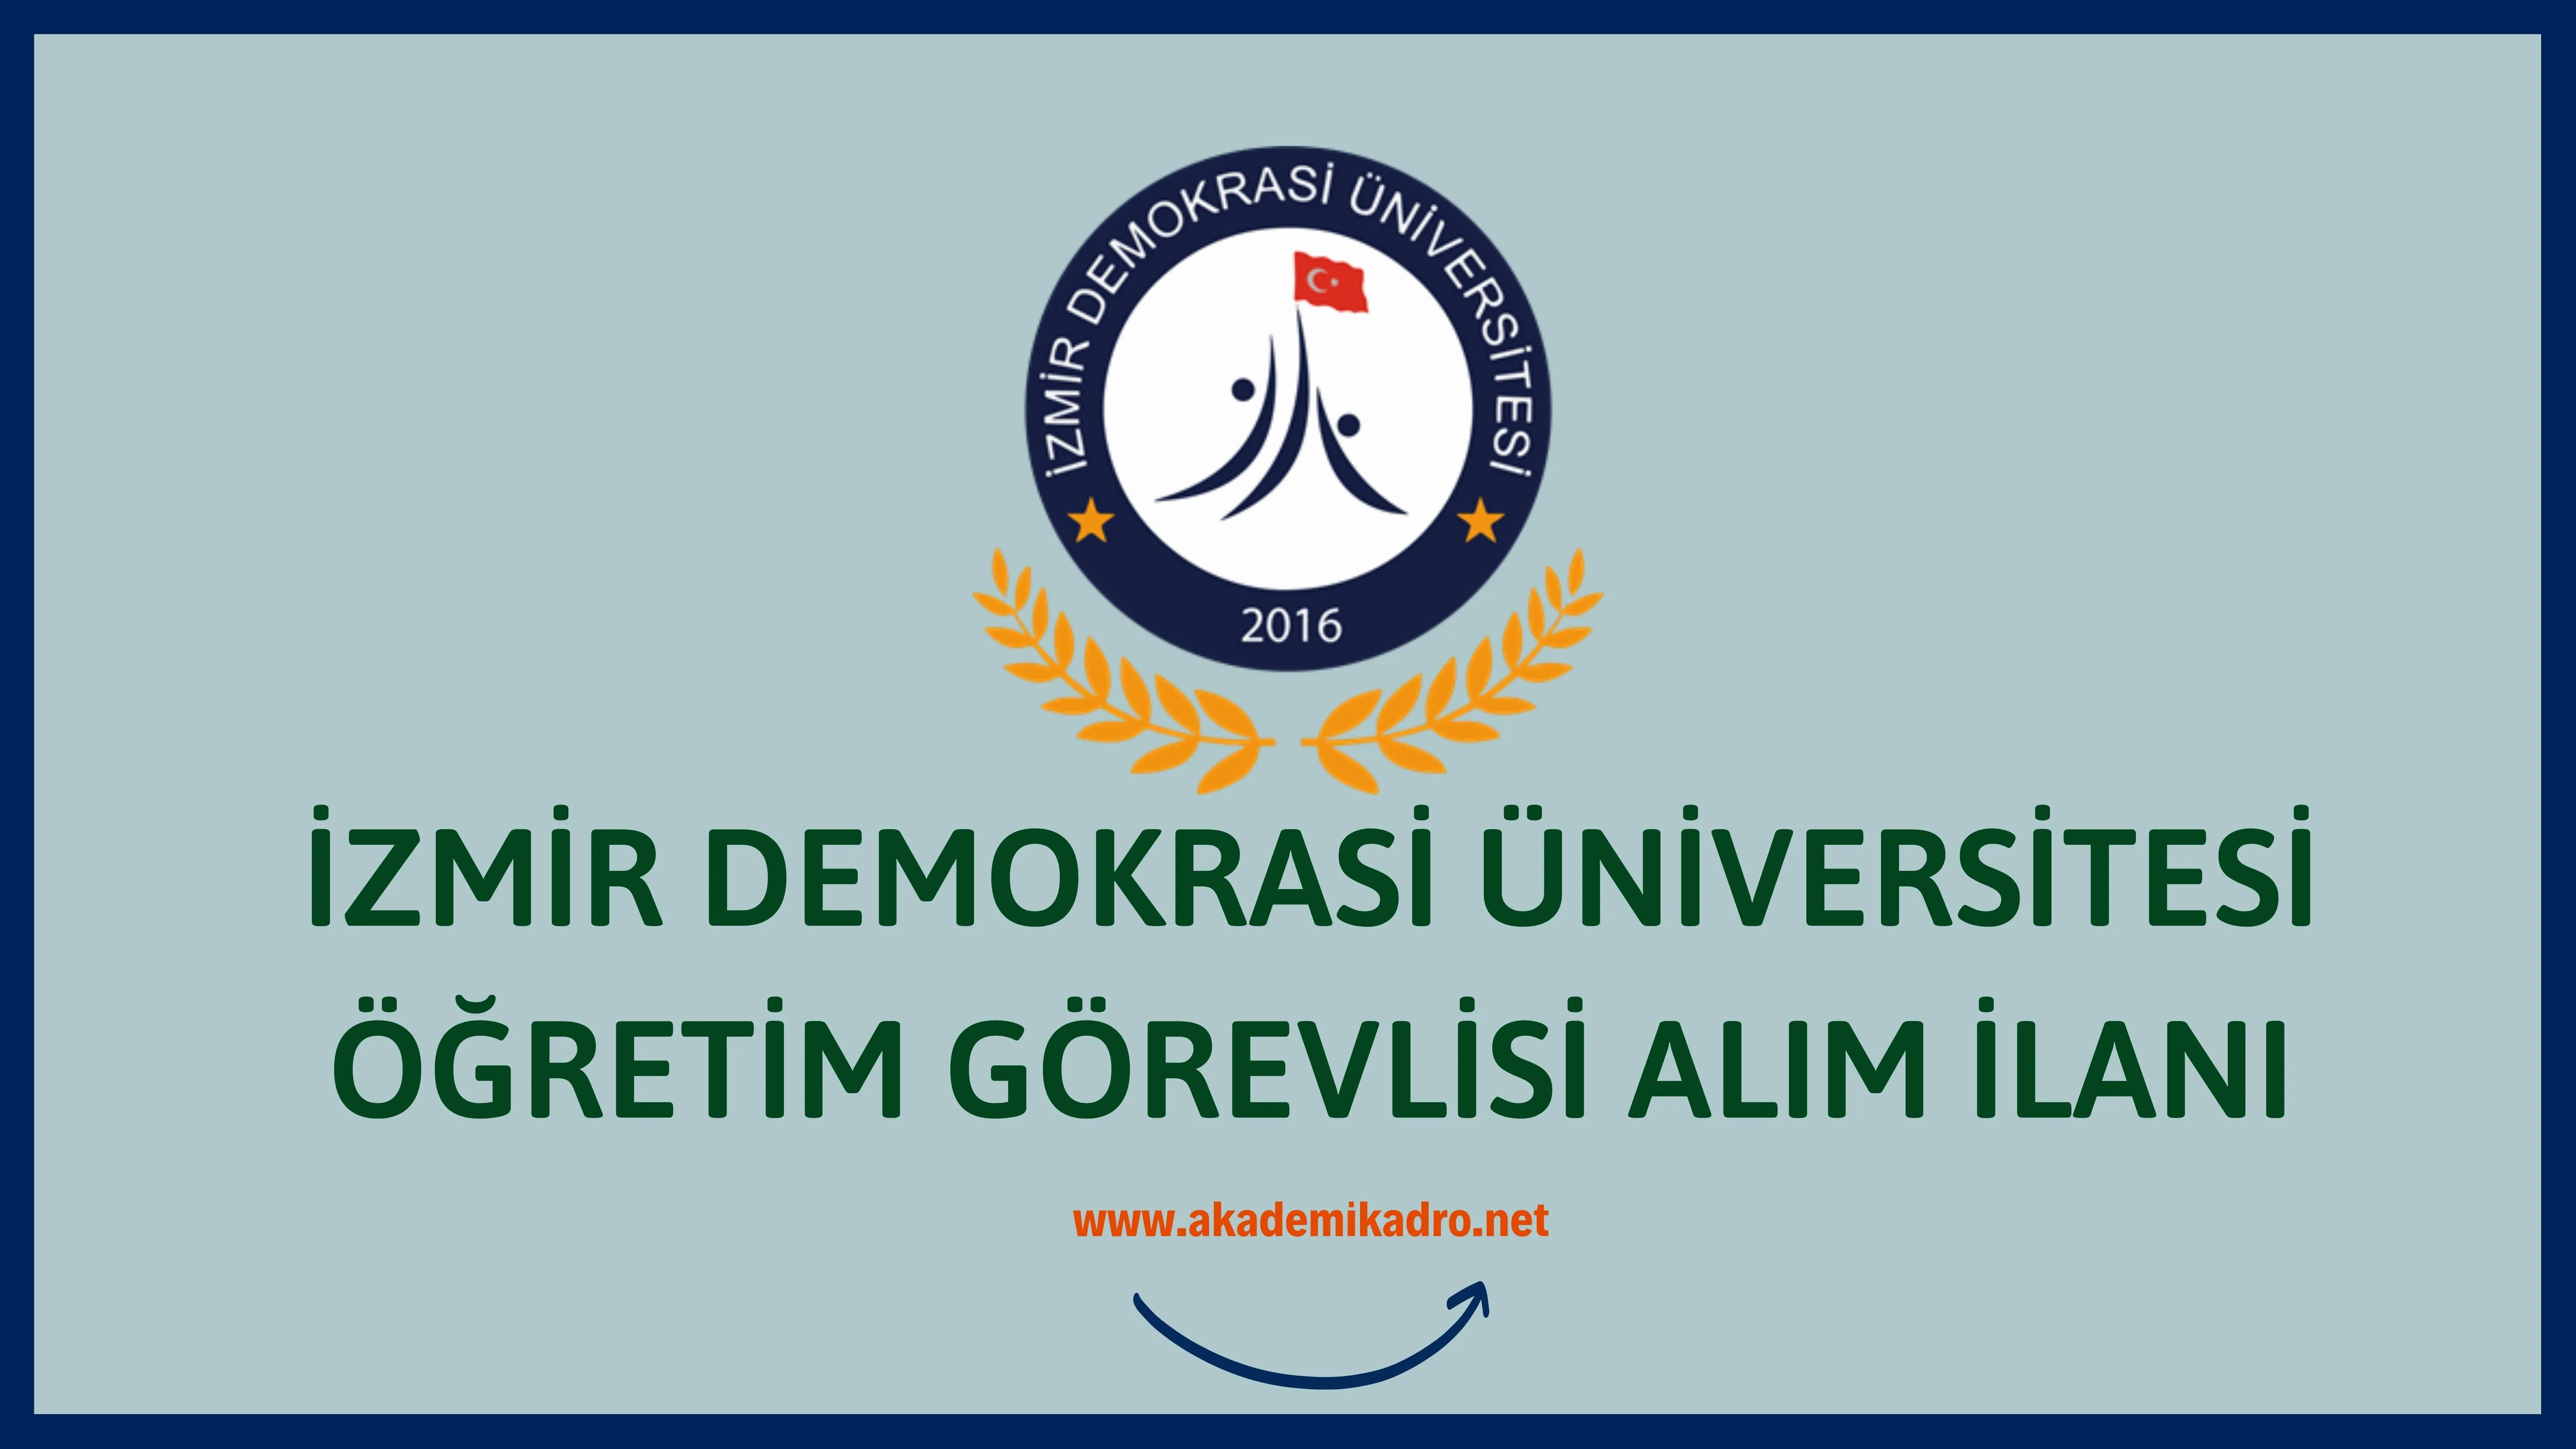 İzmir Demokrasi Üniversitesi 3 Öğretim Görevlisi alacak. Son başvuru tarihi 14 Eylül 2022